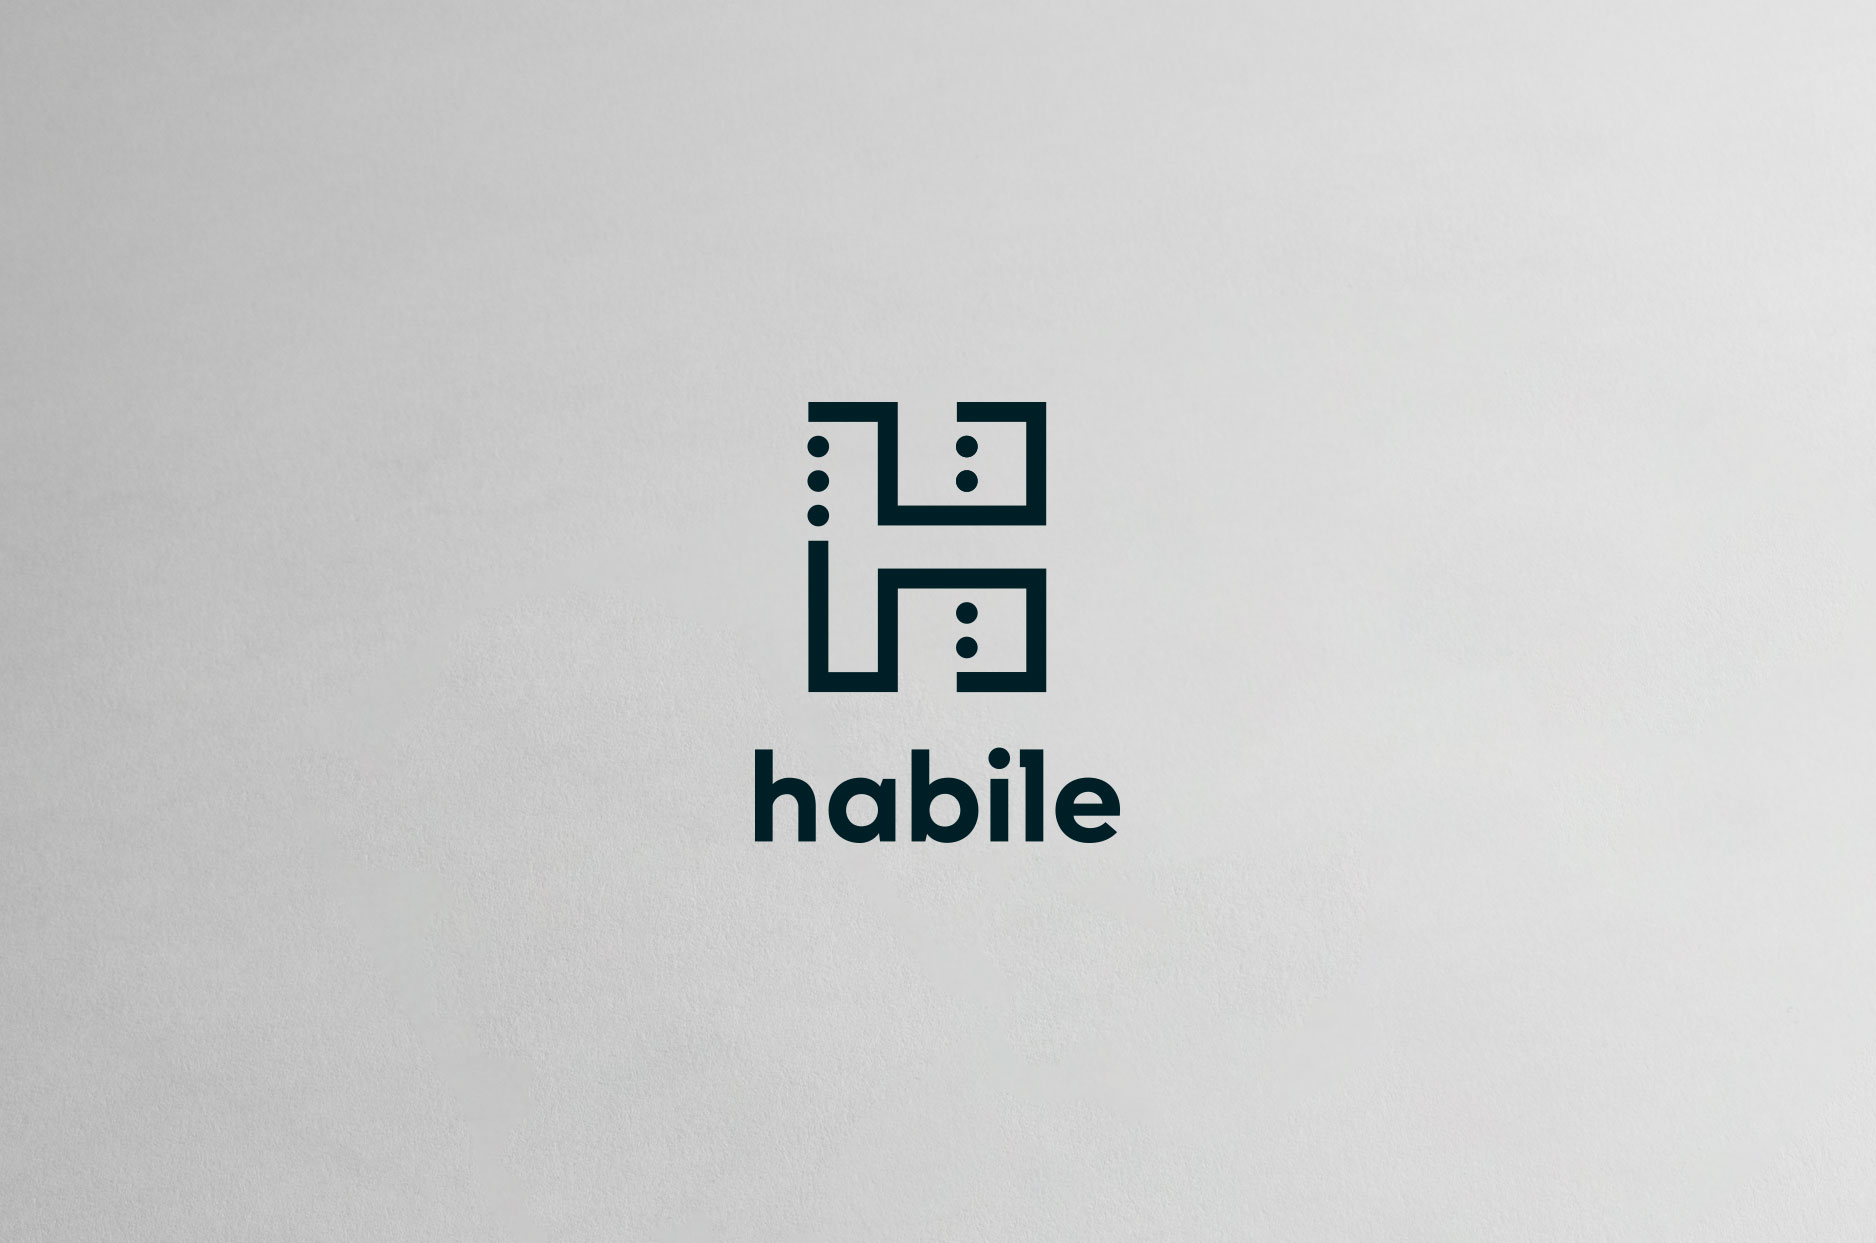 habile